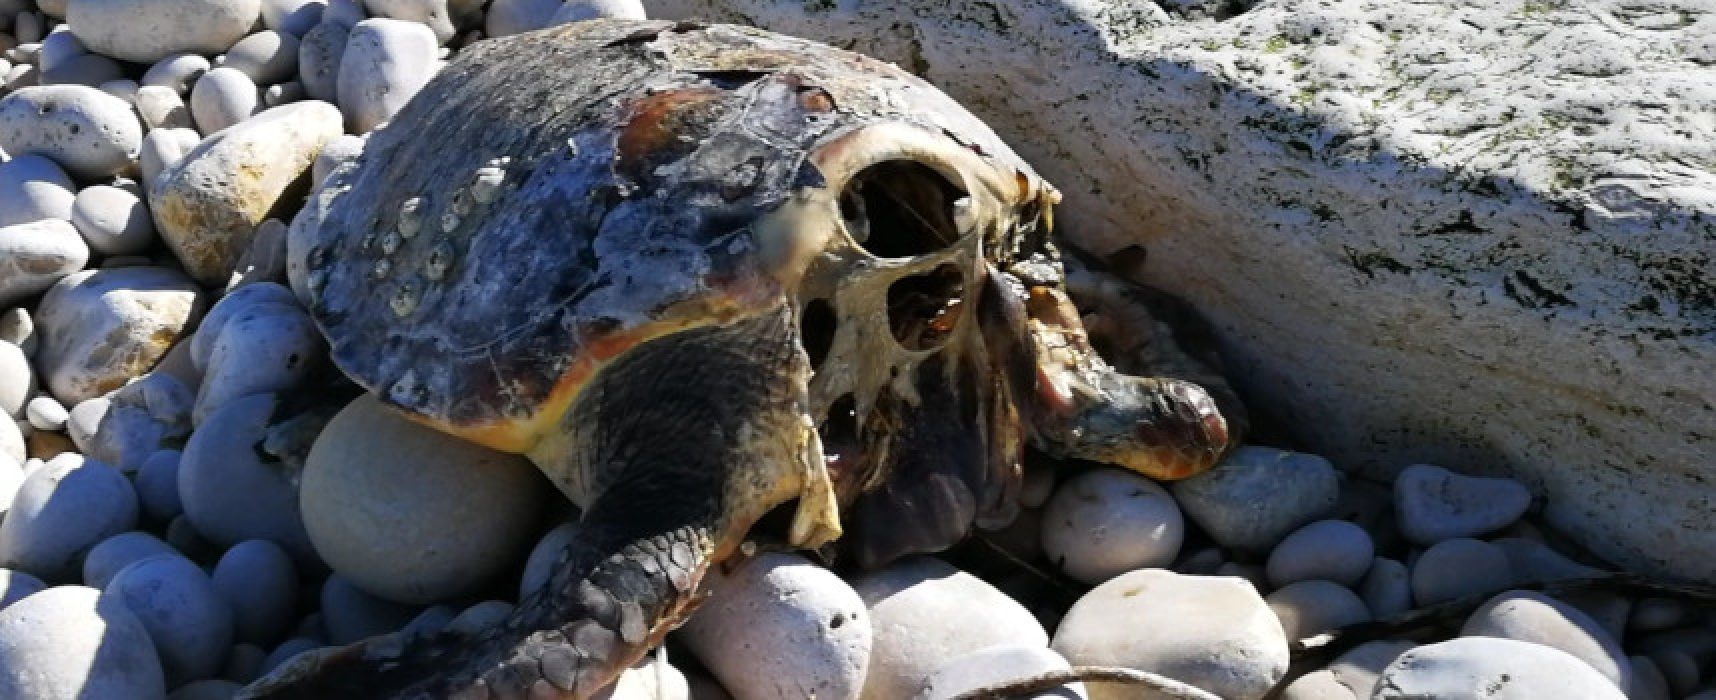 Tartarughe marine decapitate per superstizione, l’appello del WWF: “Chi sa parli!”